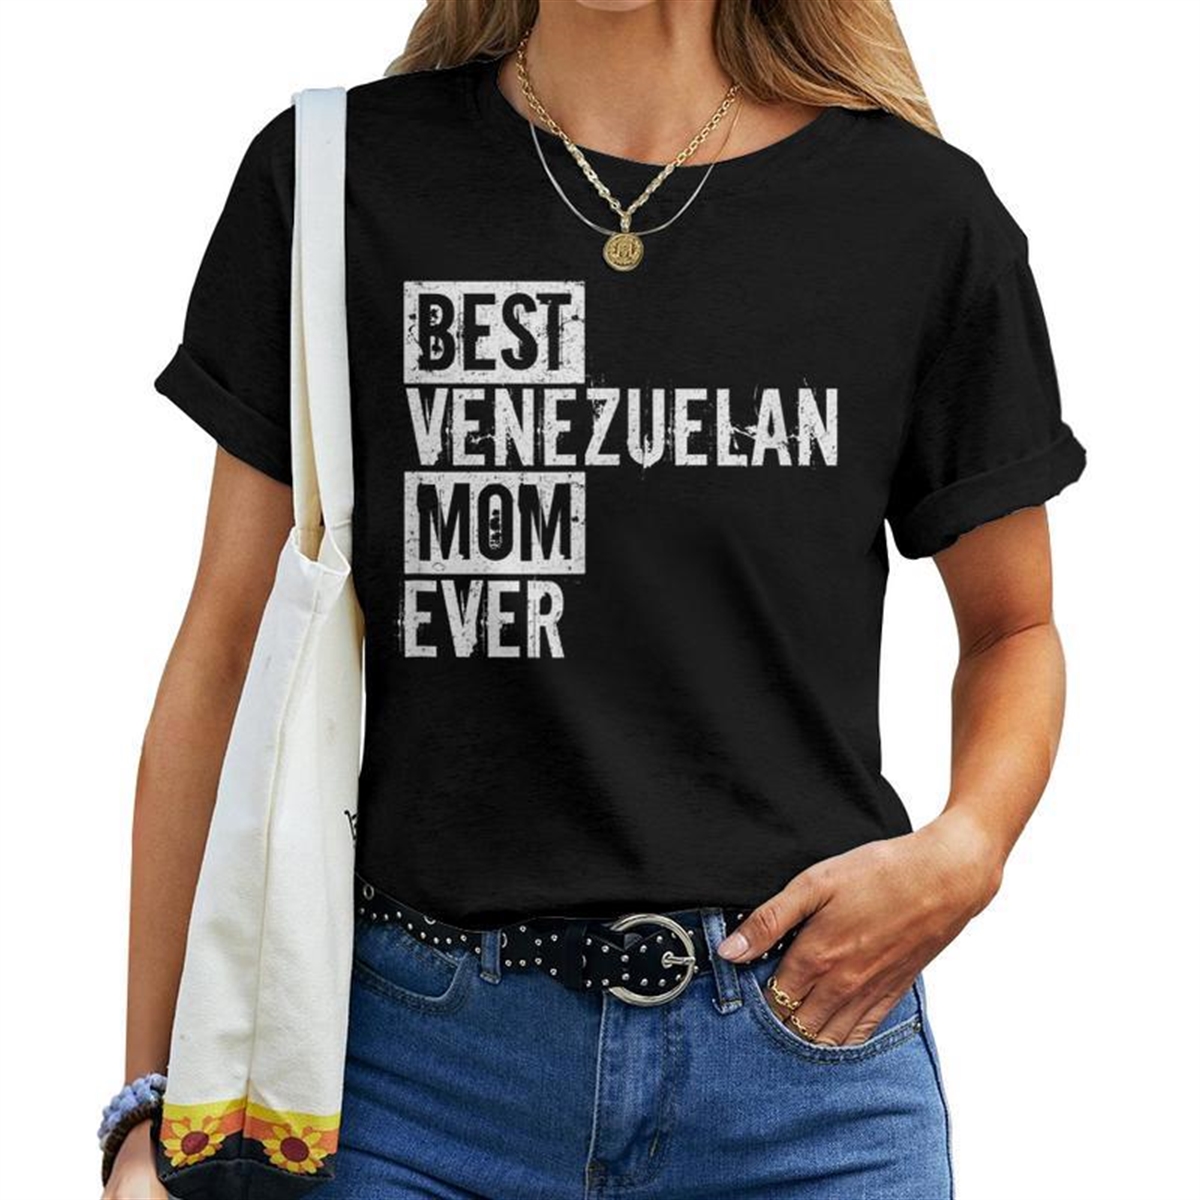 Best Venezuelan Mom Ever Love For Mom Women T-shirt